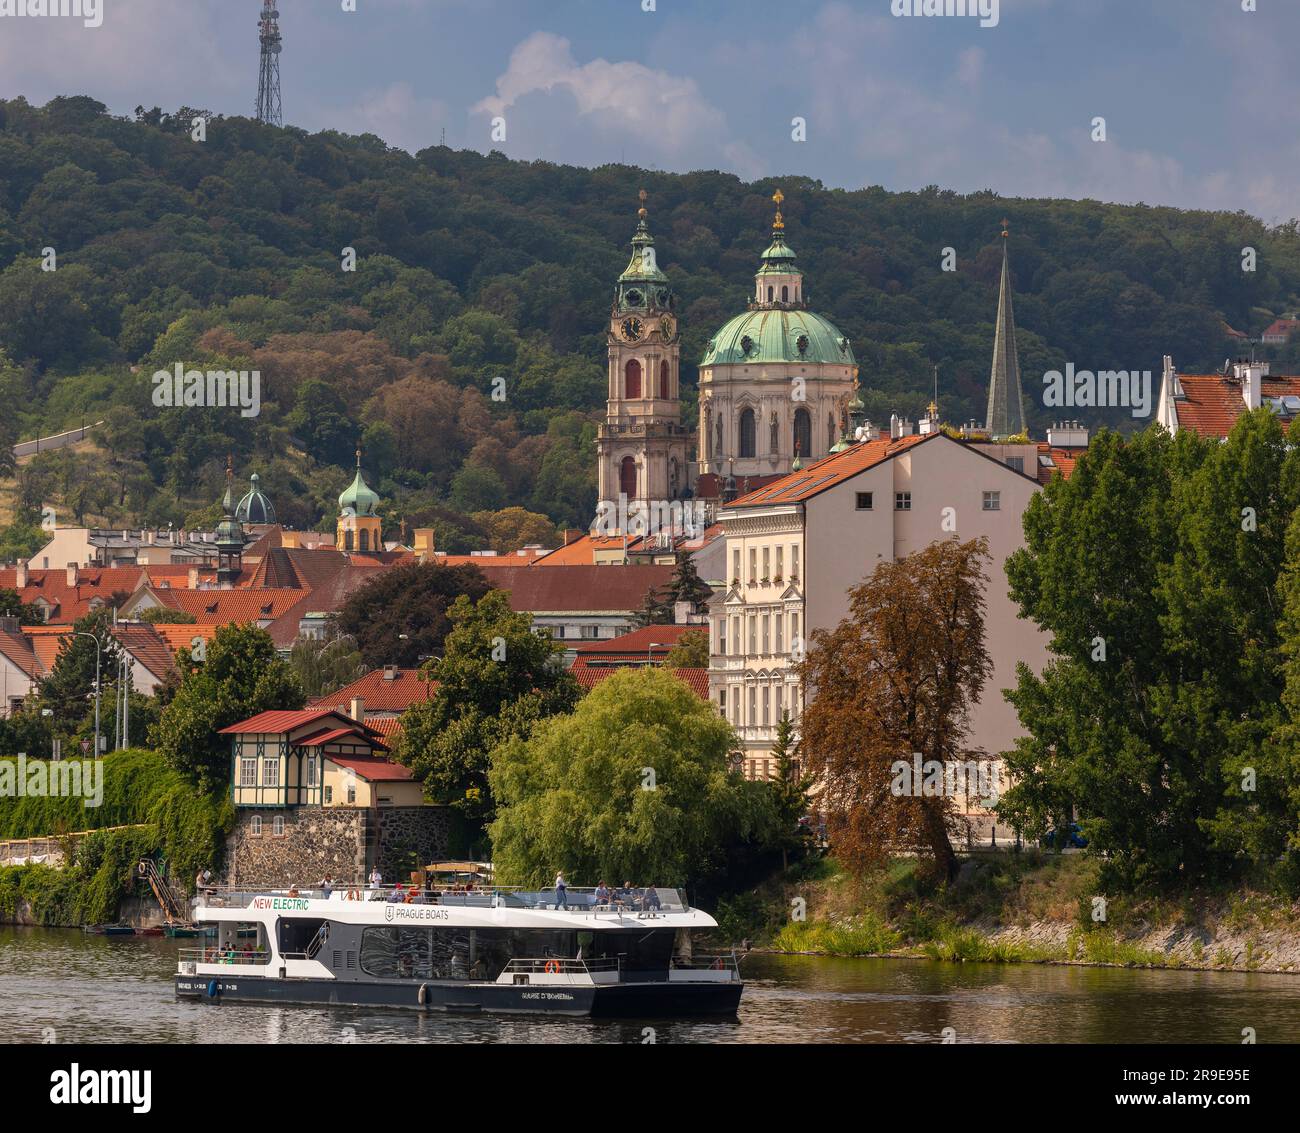 PRAGUE, RÉPUBLIQUE TCHÈQUE, EUROPE - croisière en bateau avec des touristes sur la Vltava. Banque D'Images